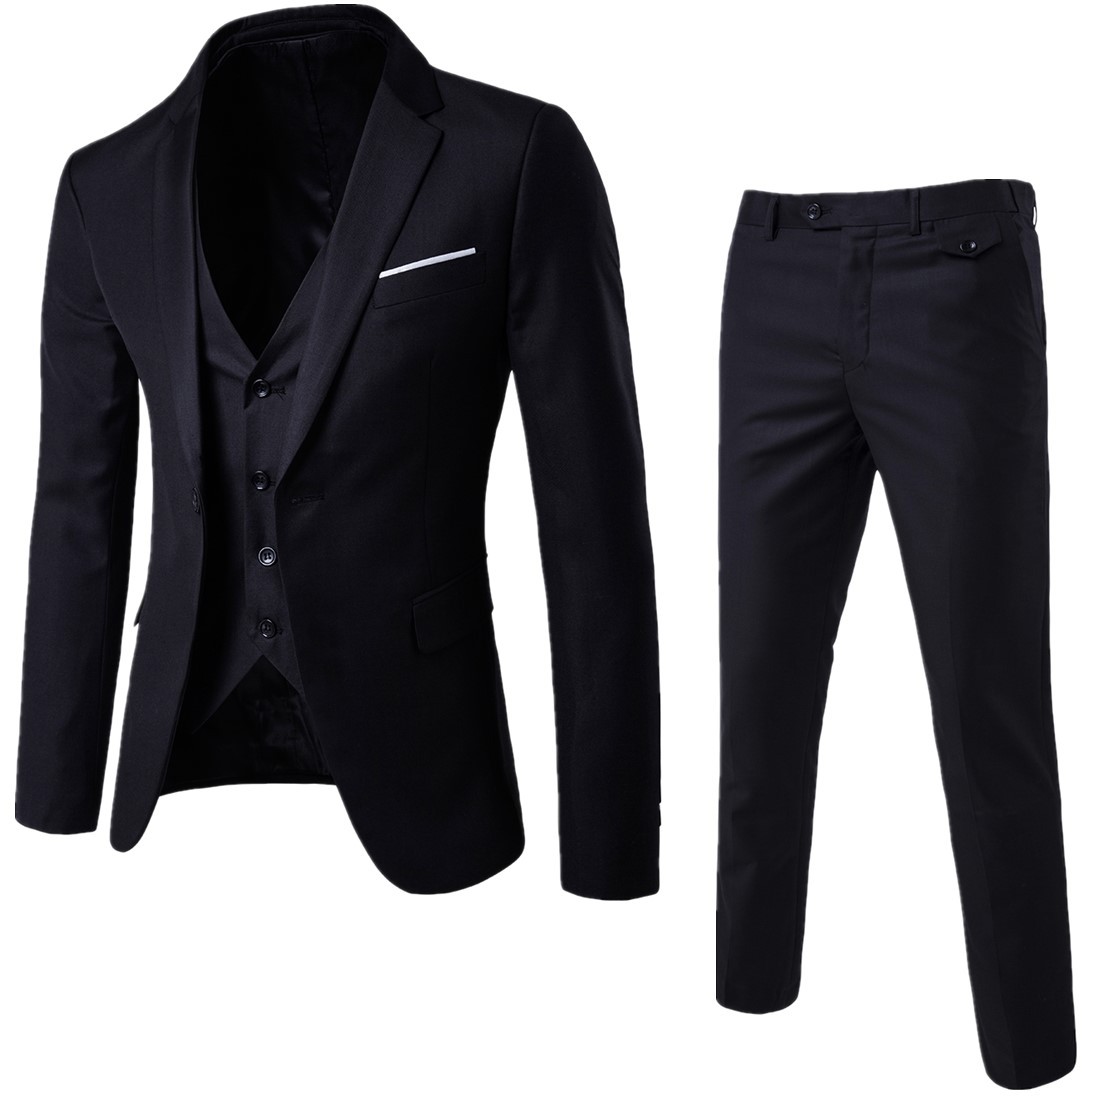 Men's suit 3-piece business Korean casual professional suit men's formal best man's suit slim suit men's suit